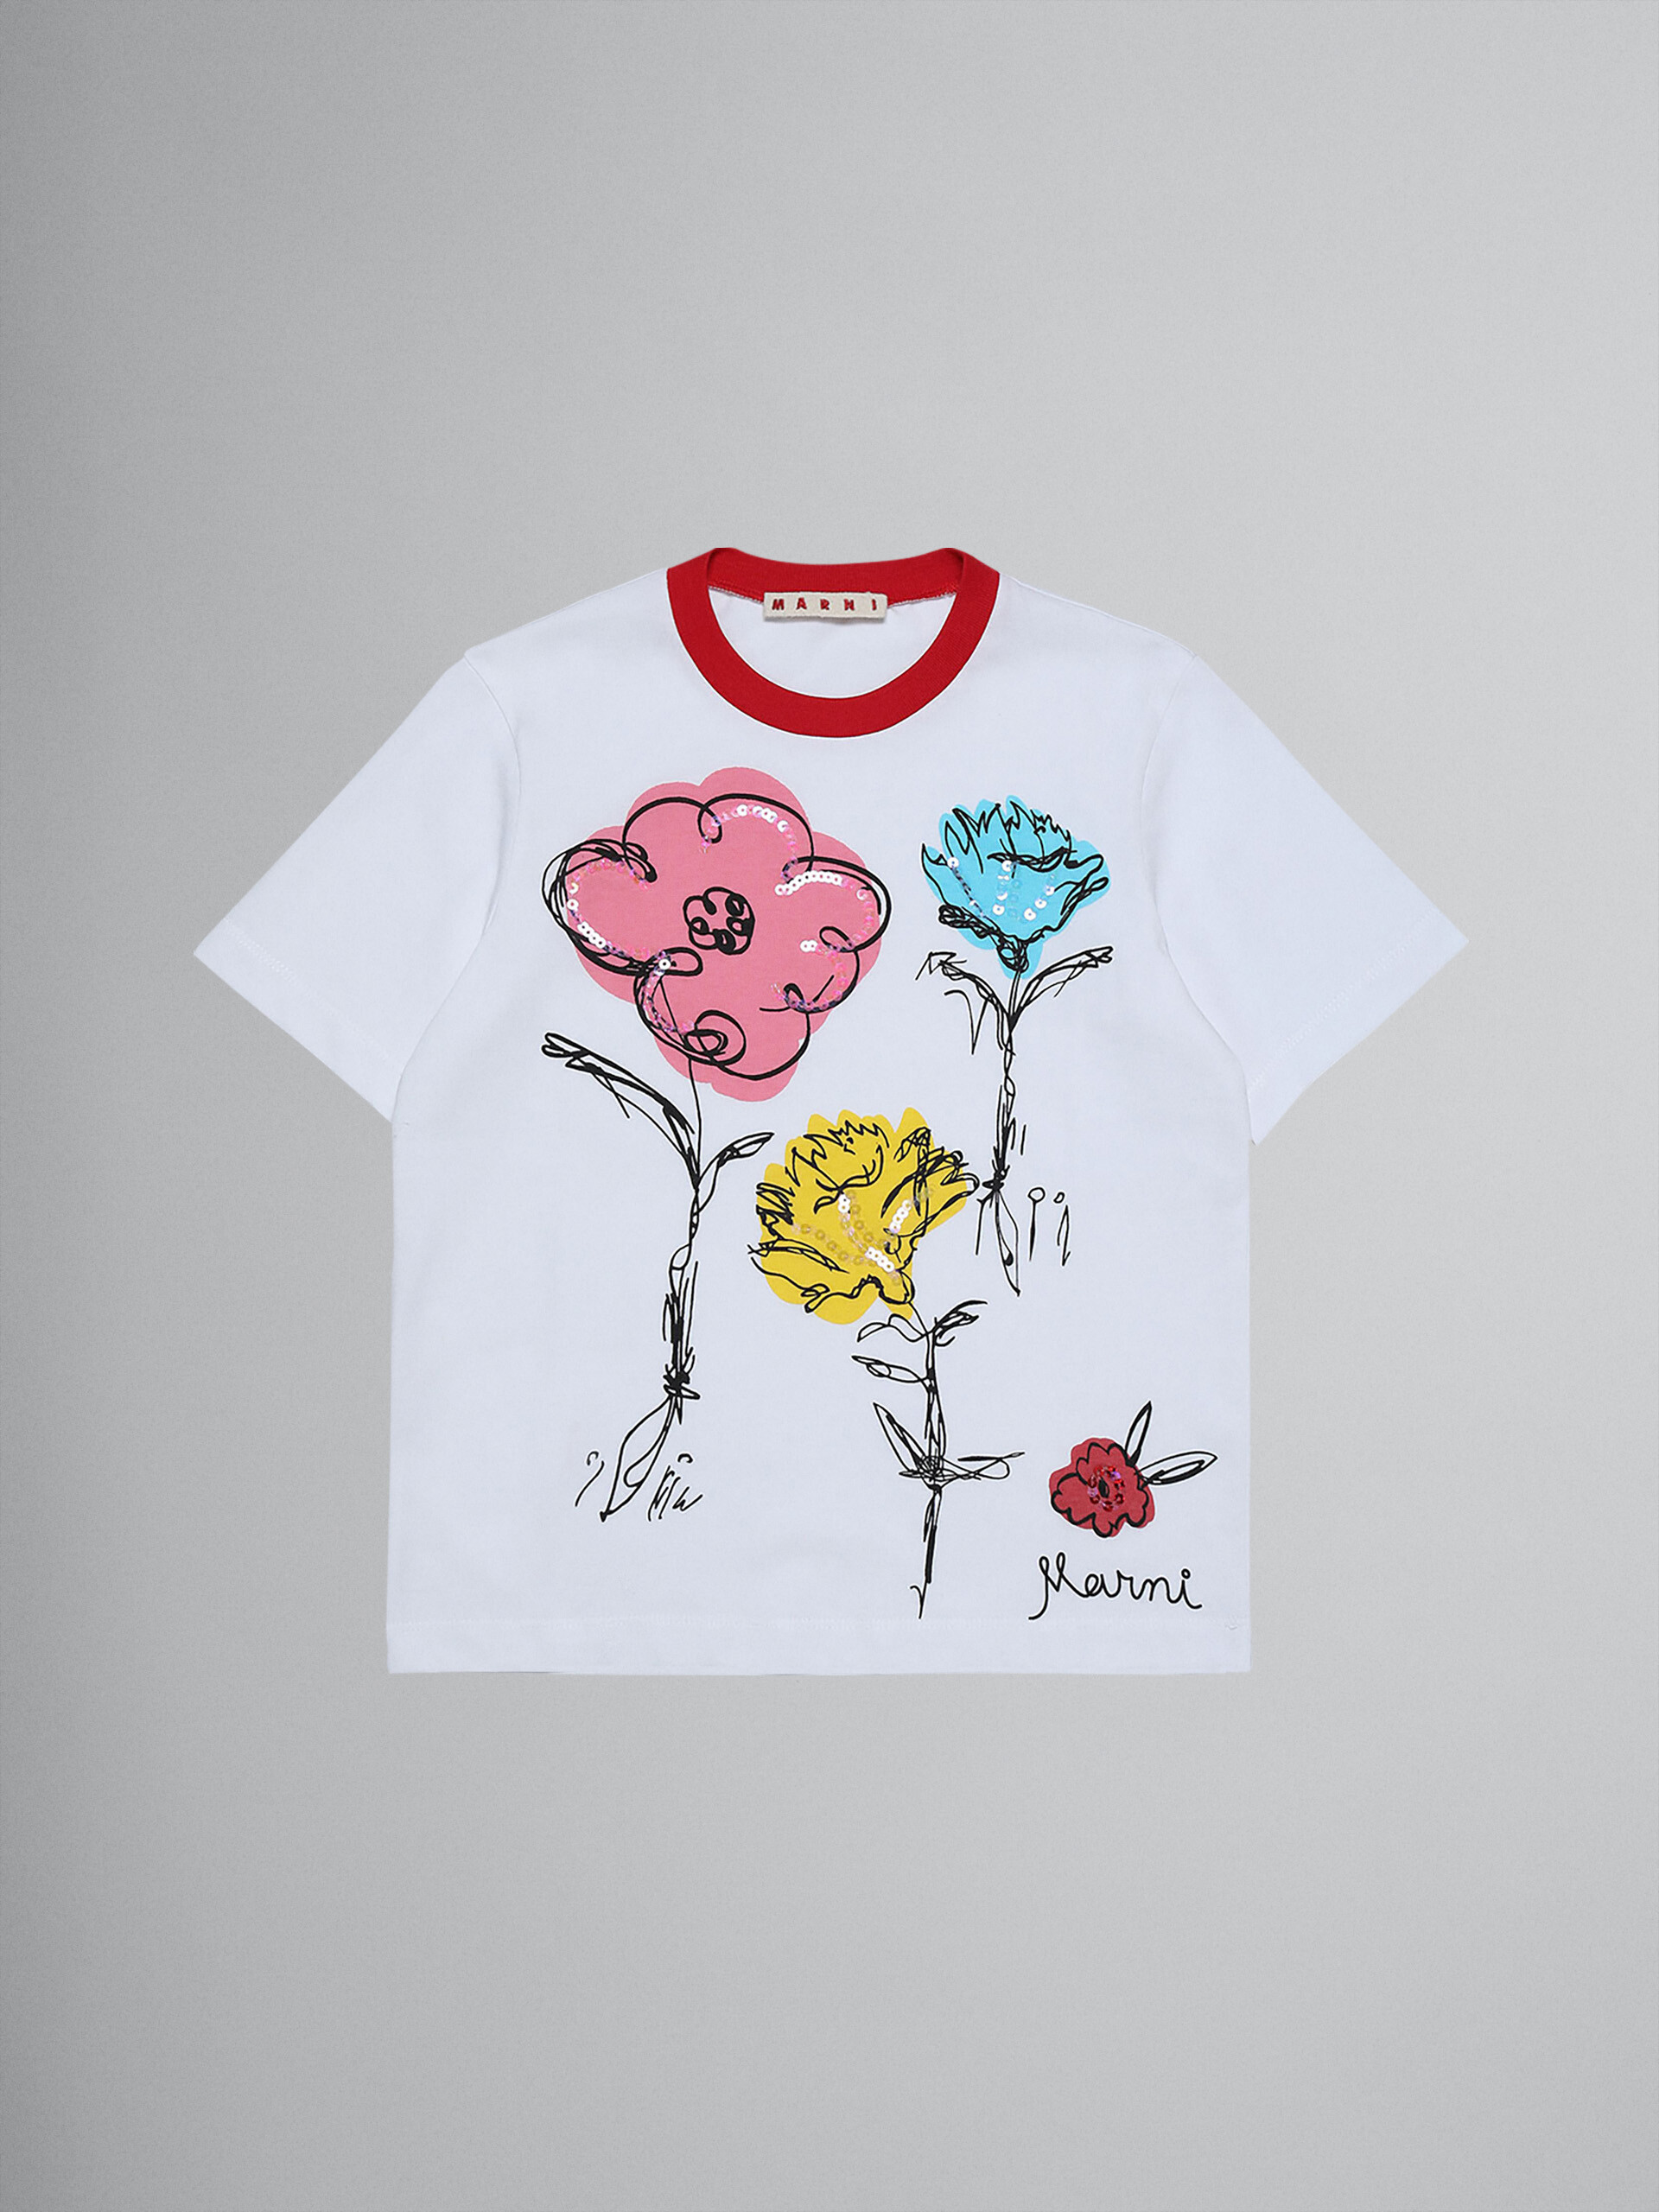 Camiseta floral de jersey de algodón - Camisetas - Image 1